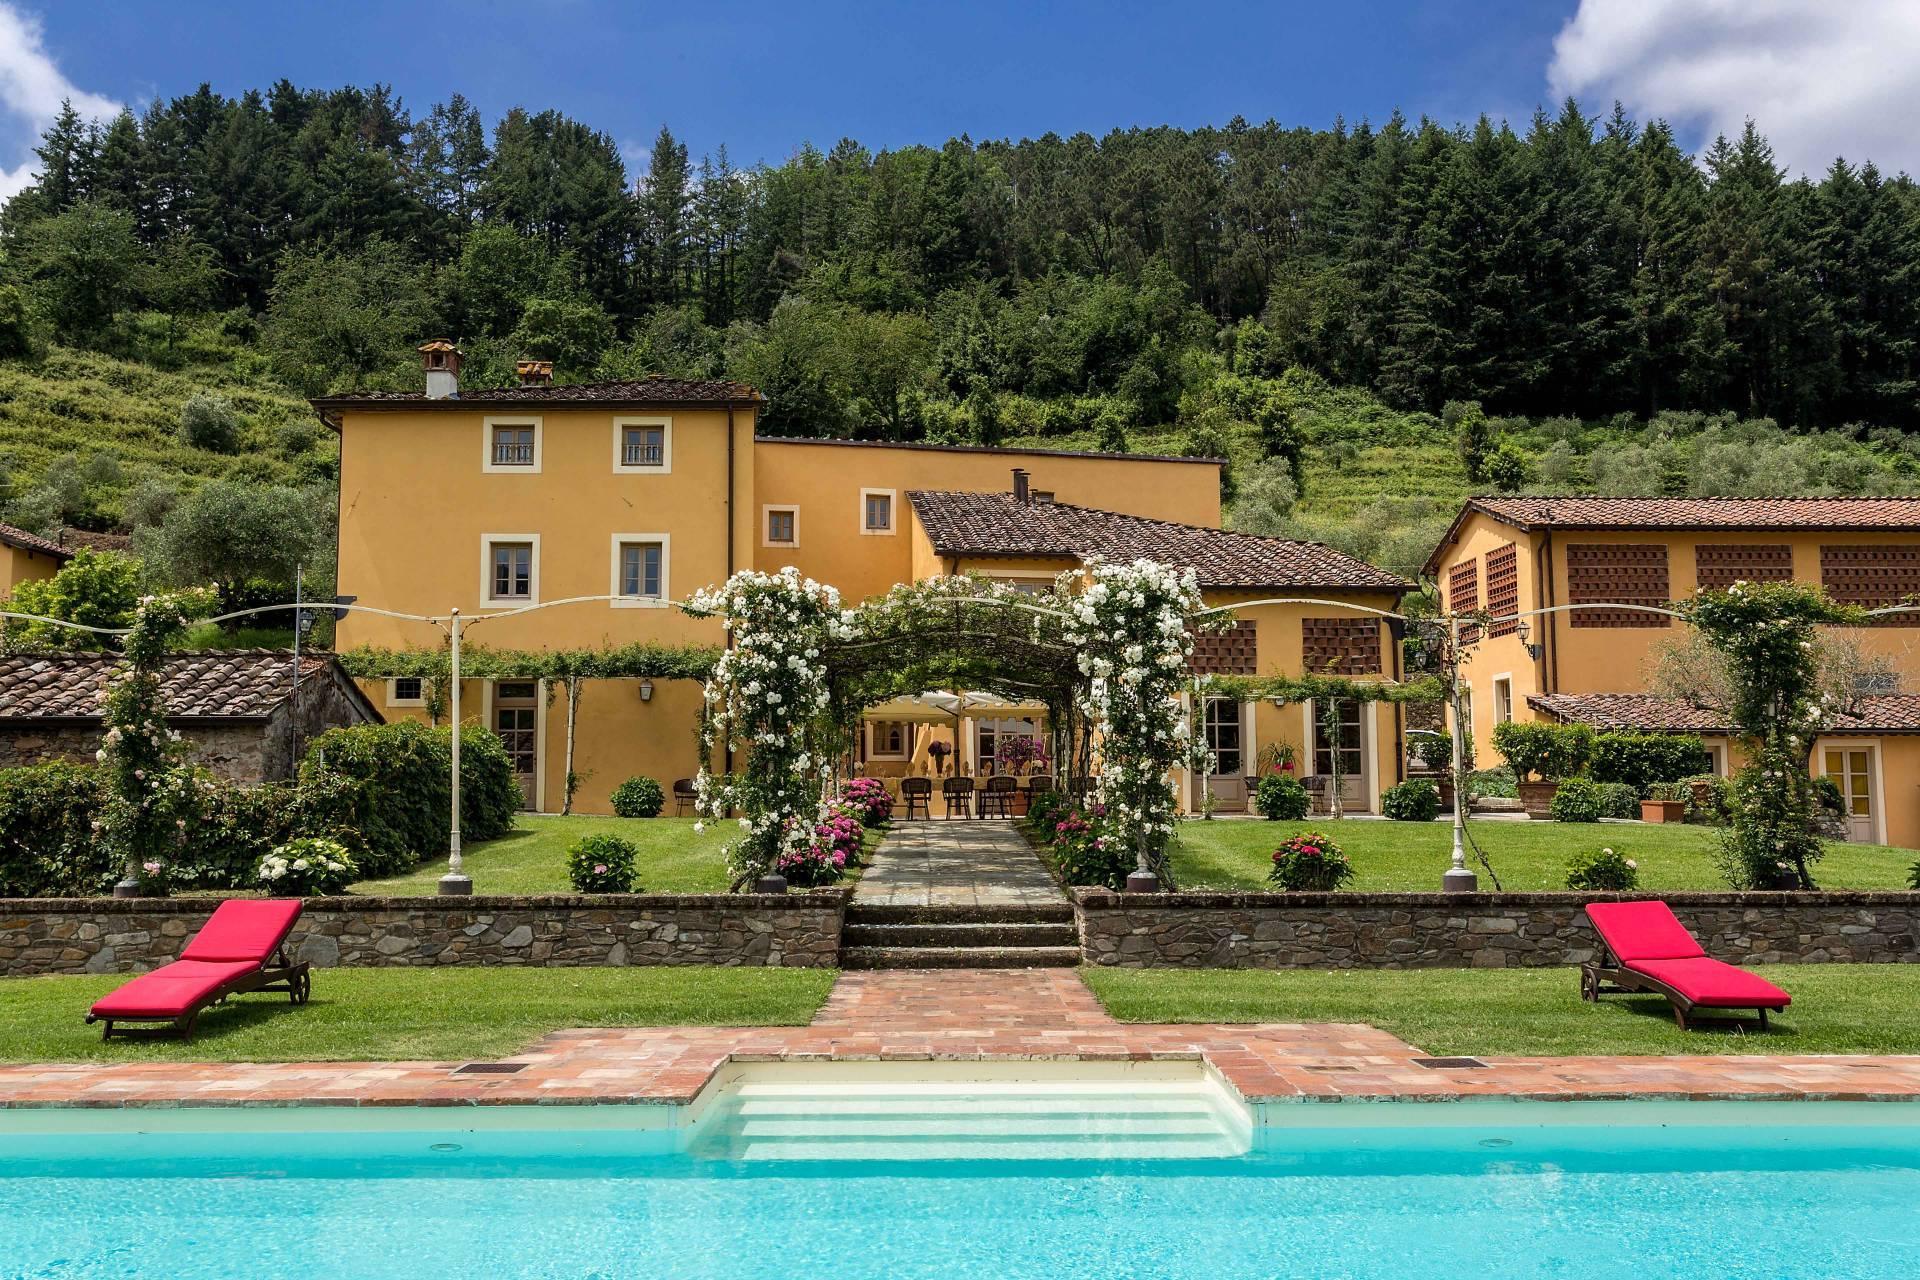 Una tipica villa toscana immersa nel poetico paesaggio italiano - 2